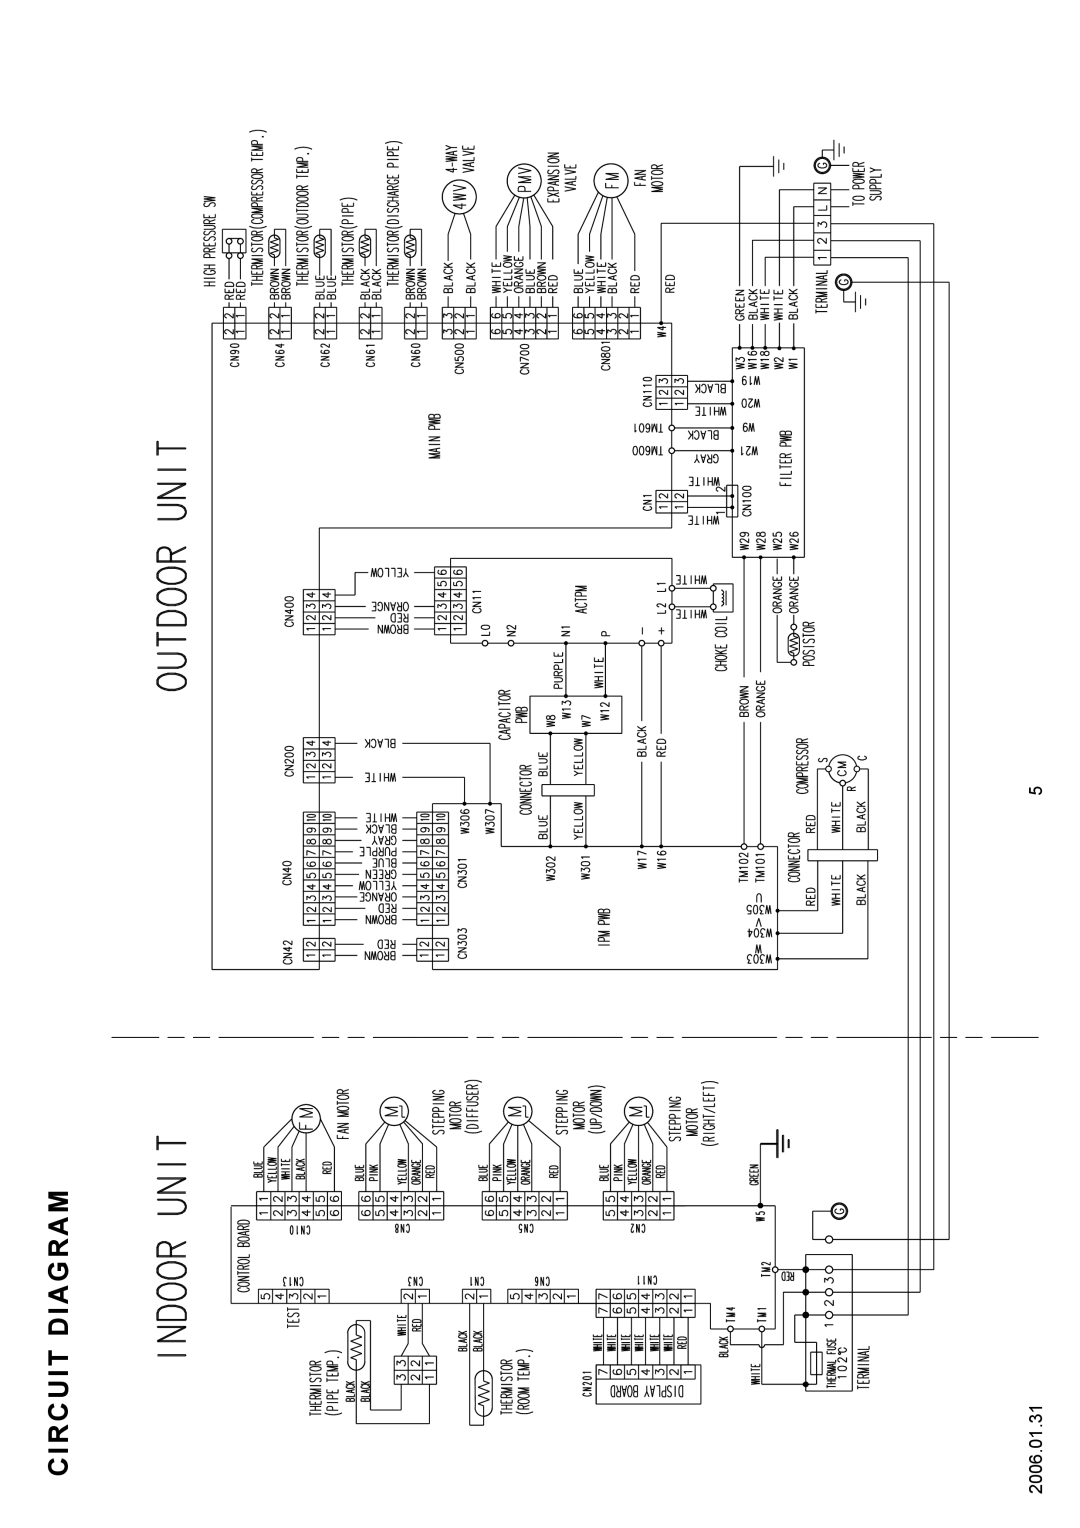 Fujitsu AOU36CLX, ASU36CLX, ASU30CLX, AOU30CLX specifications Circuit Diagram 